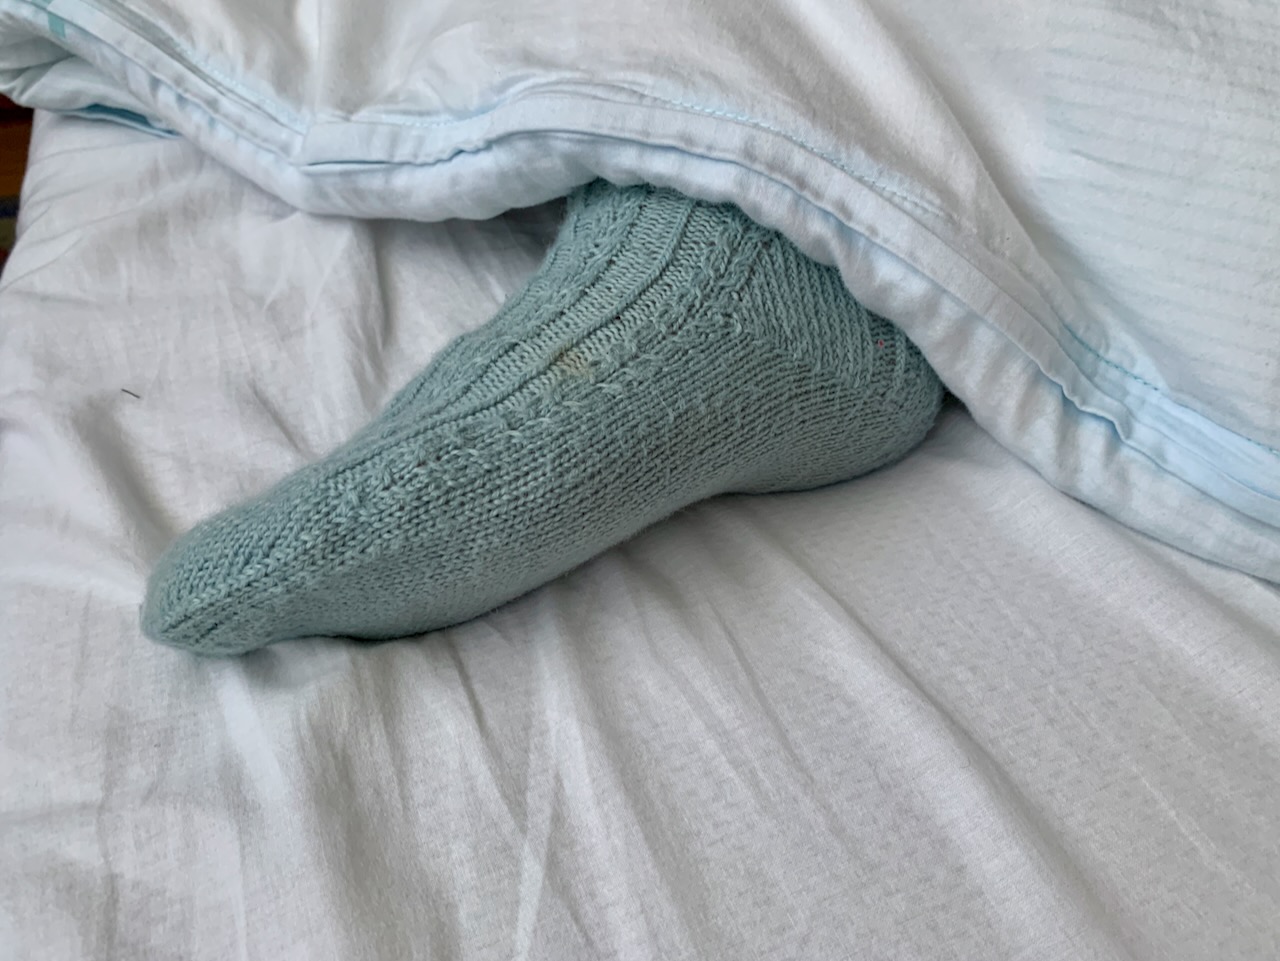 Bettsocken - Fuß guckt unter dem Oberbett heraus